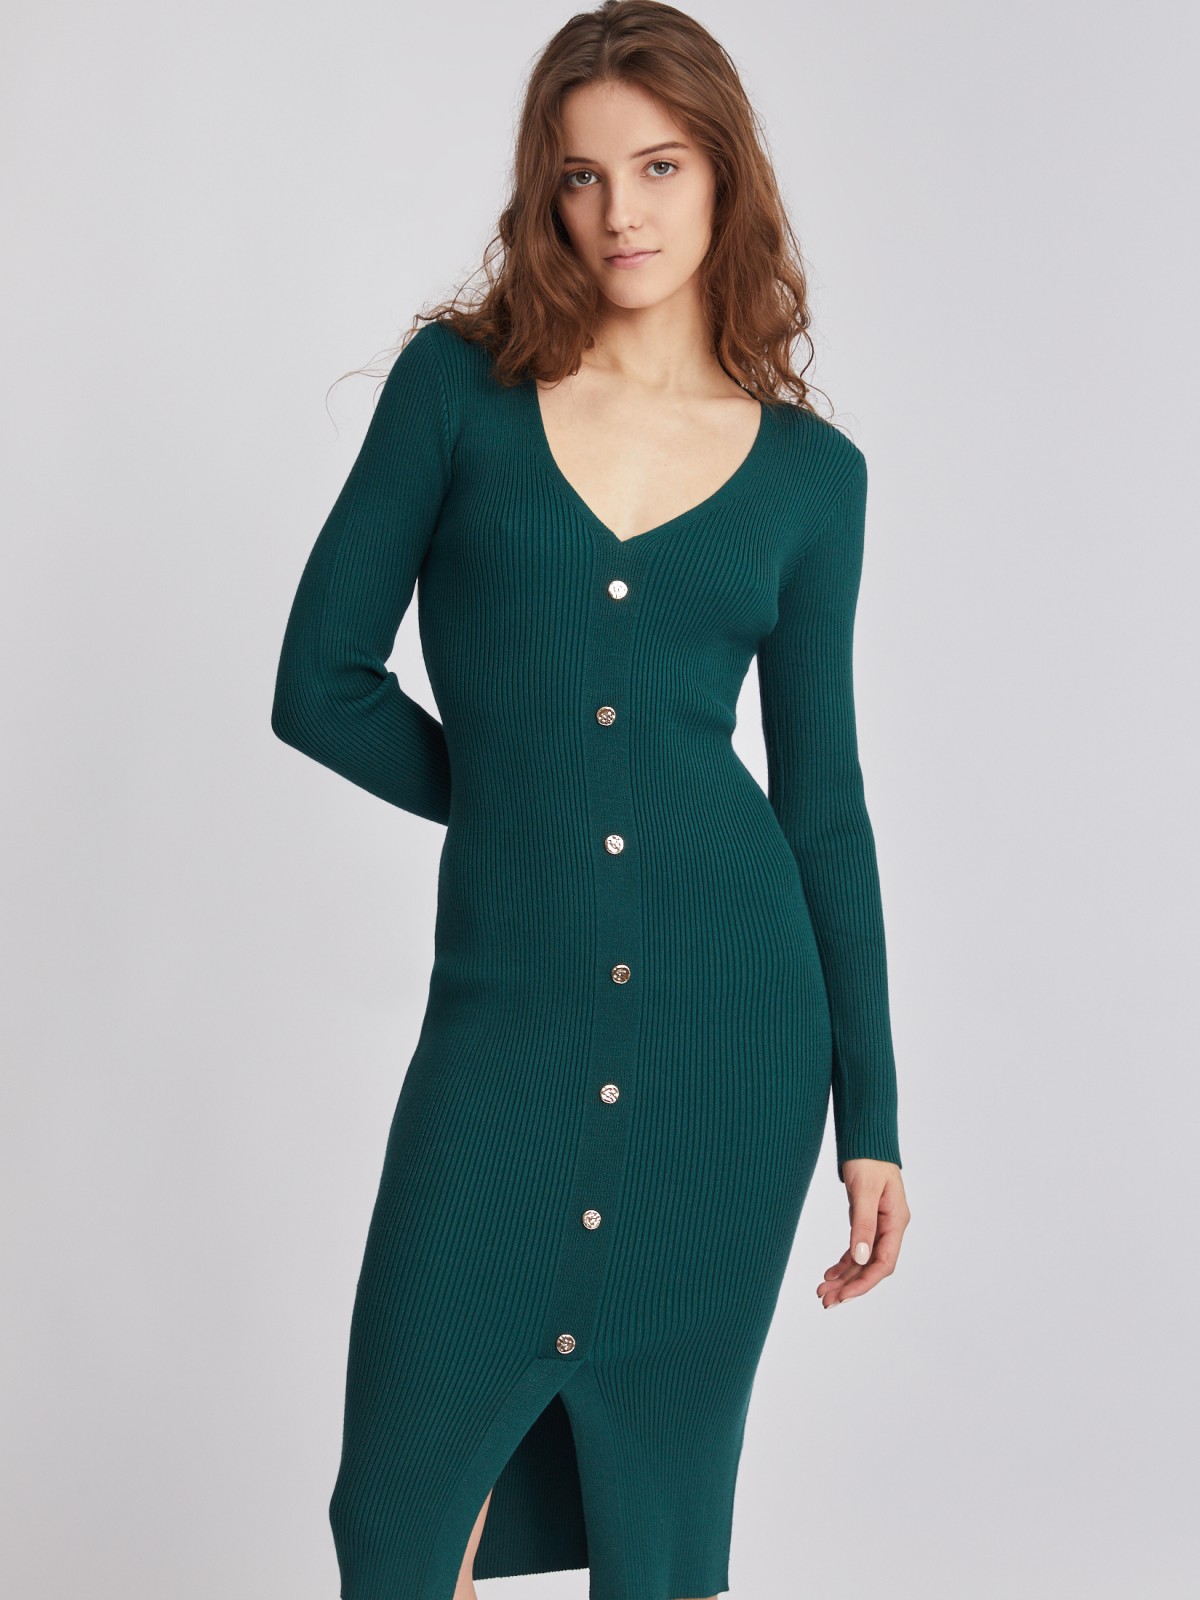 Платье вязаное zolla 223348493031, цвет темно-зеленый, размер S